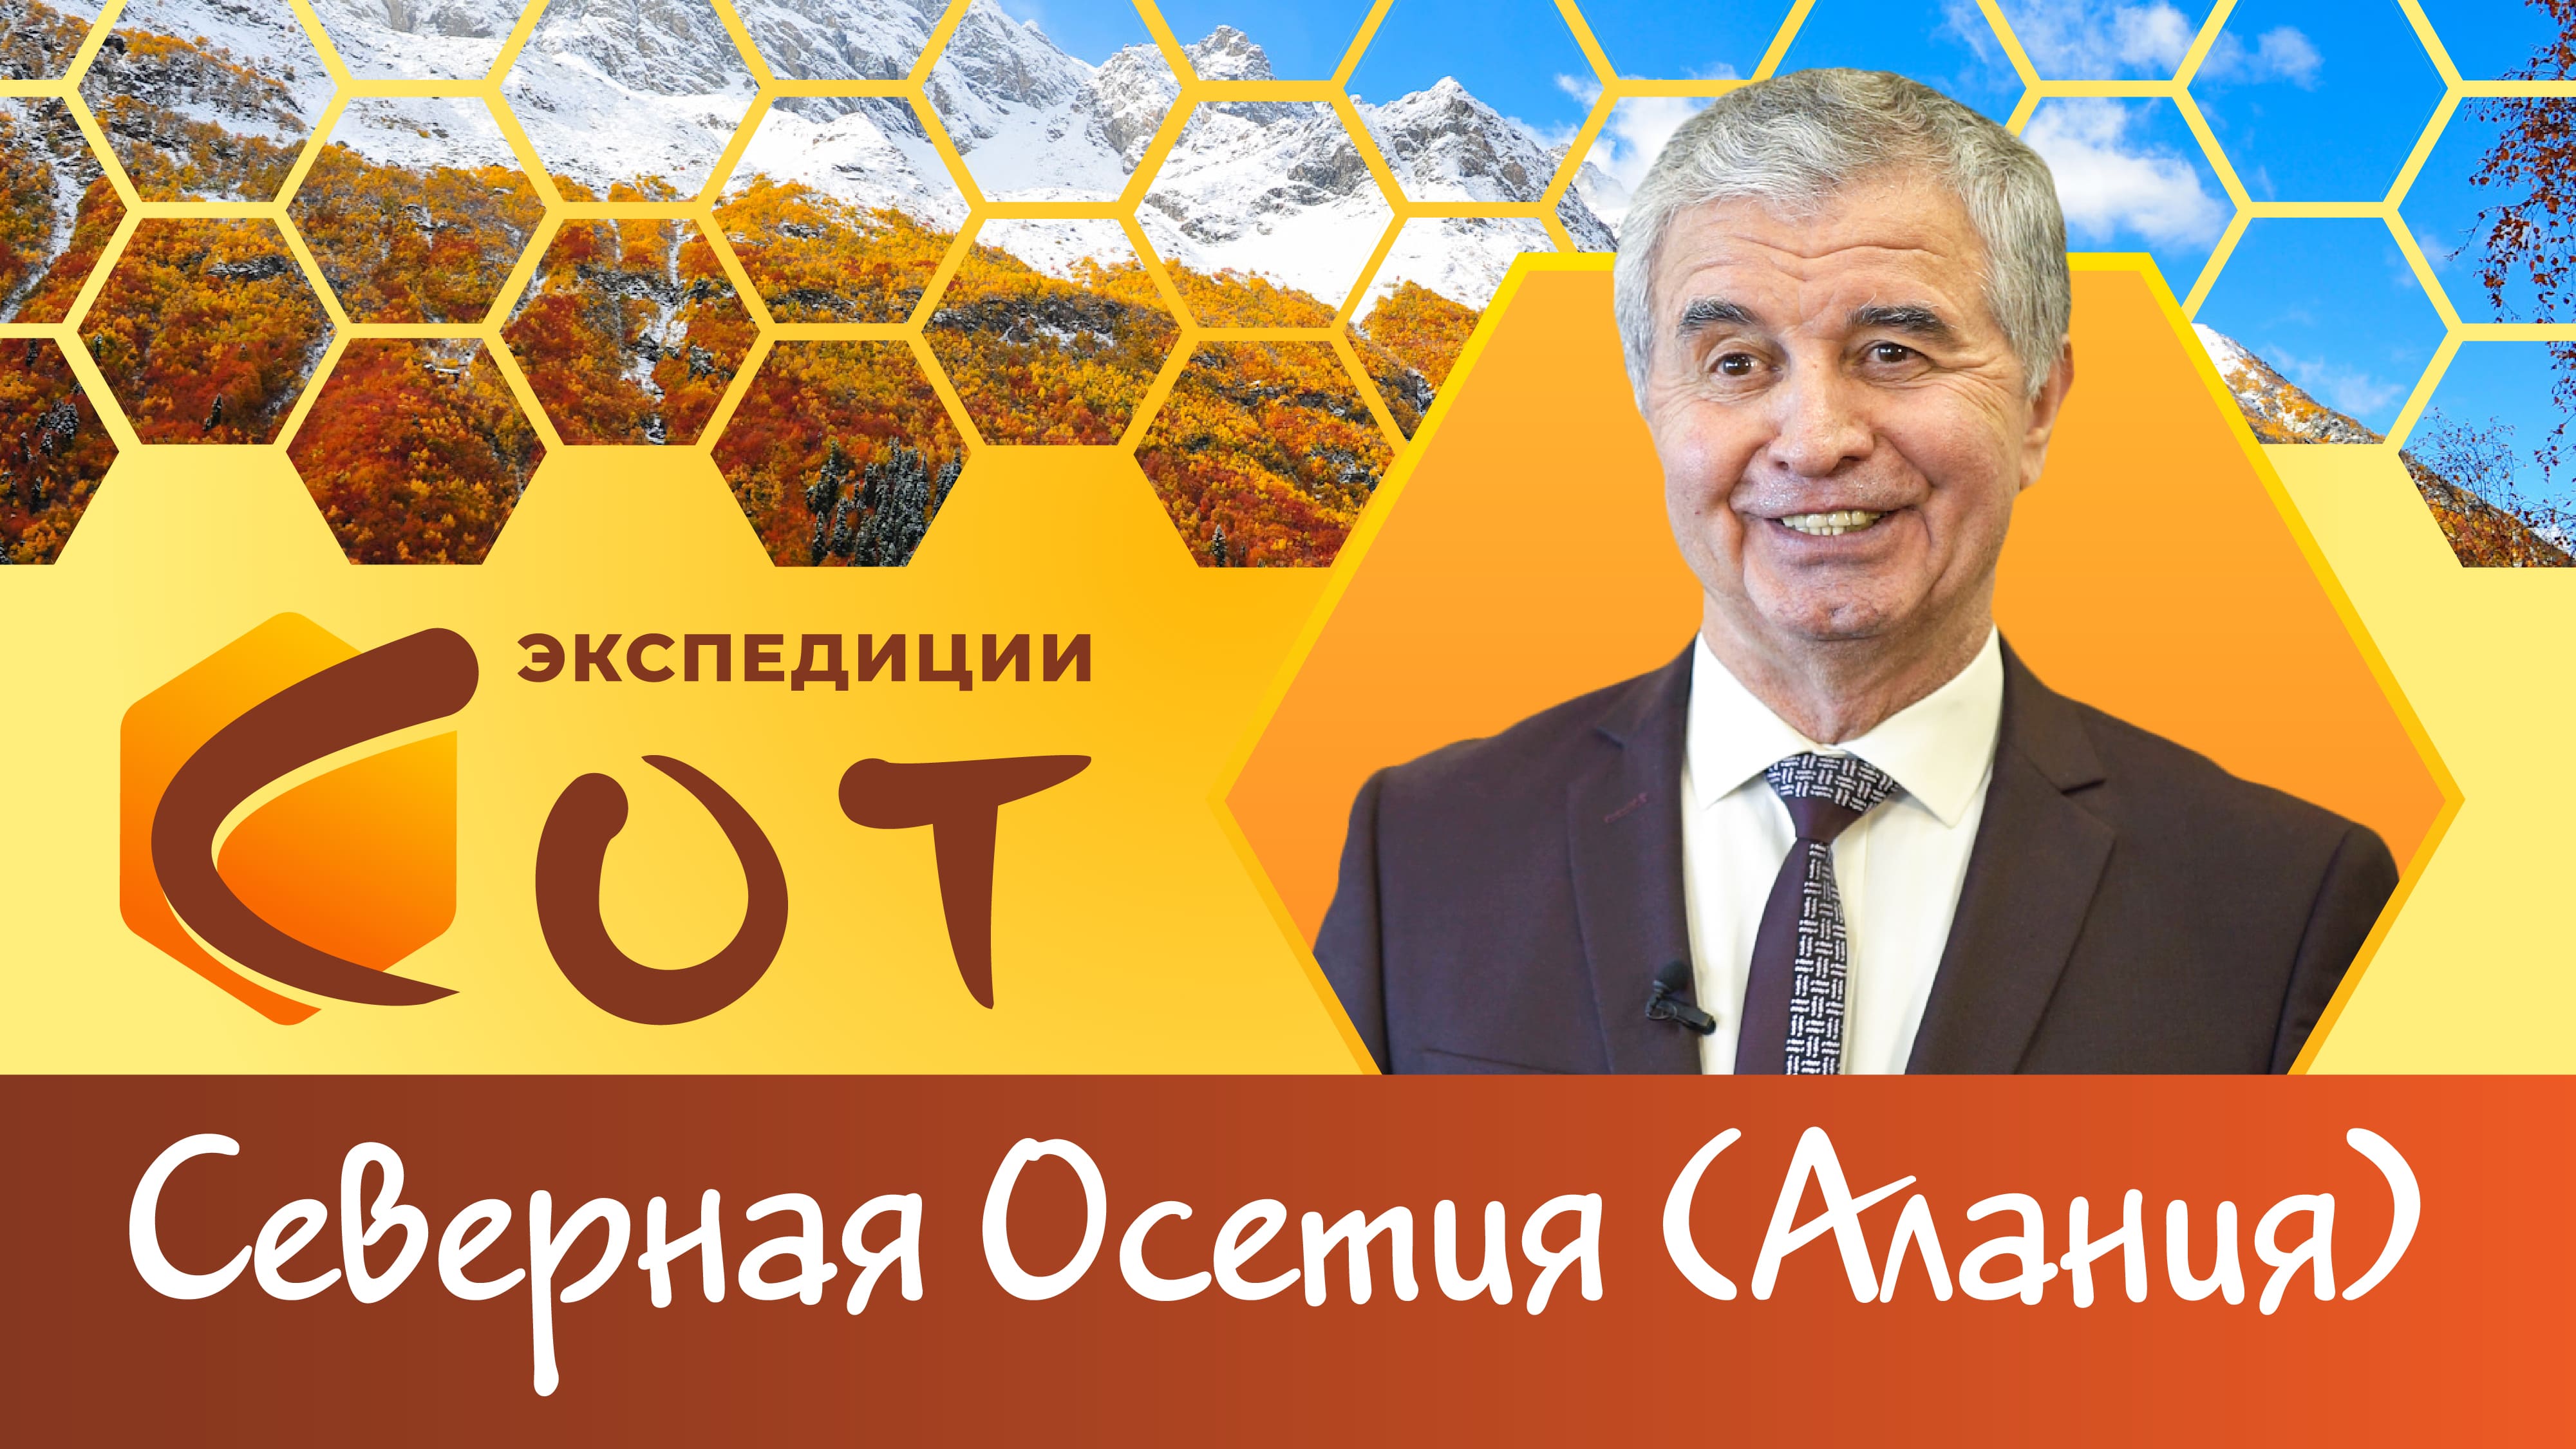 Горные и образовательные вершины Северной Осетии (Алании)